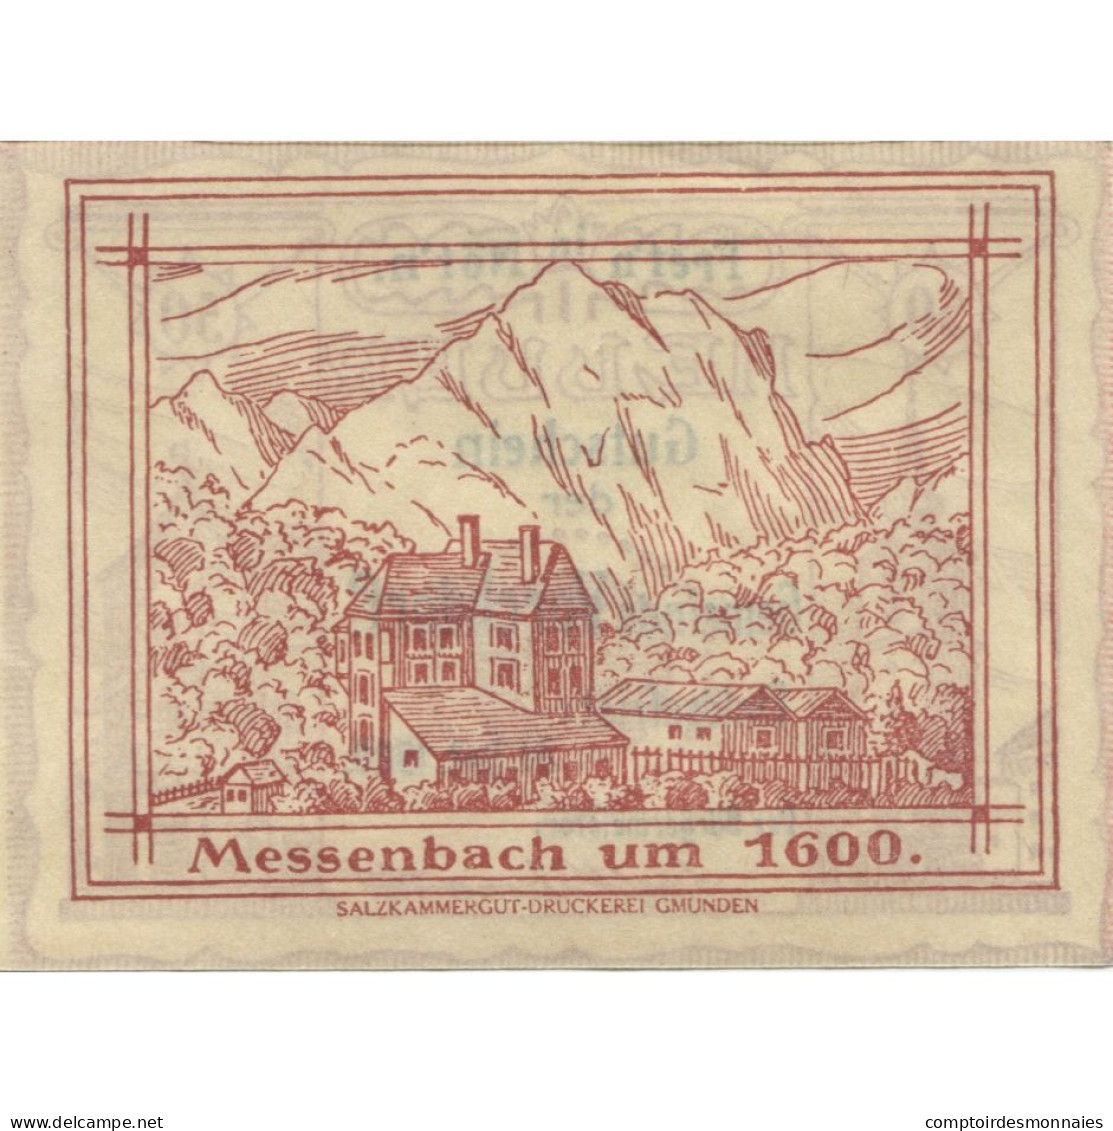 Billet, Autriche, Vorchdorf, 50 Heller, Eglise 1920-12-31, SPL Mehl:FS 1119a - Oesterreich